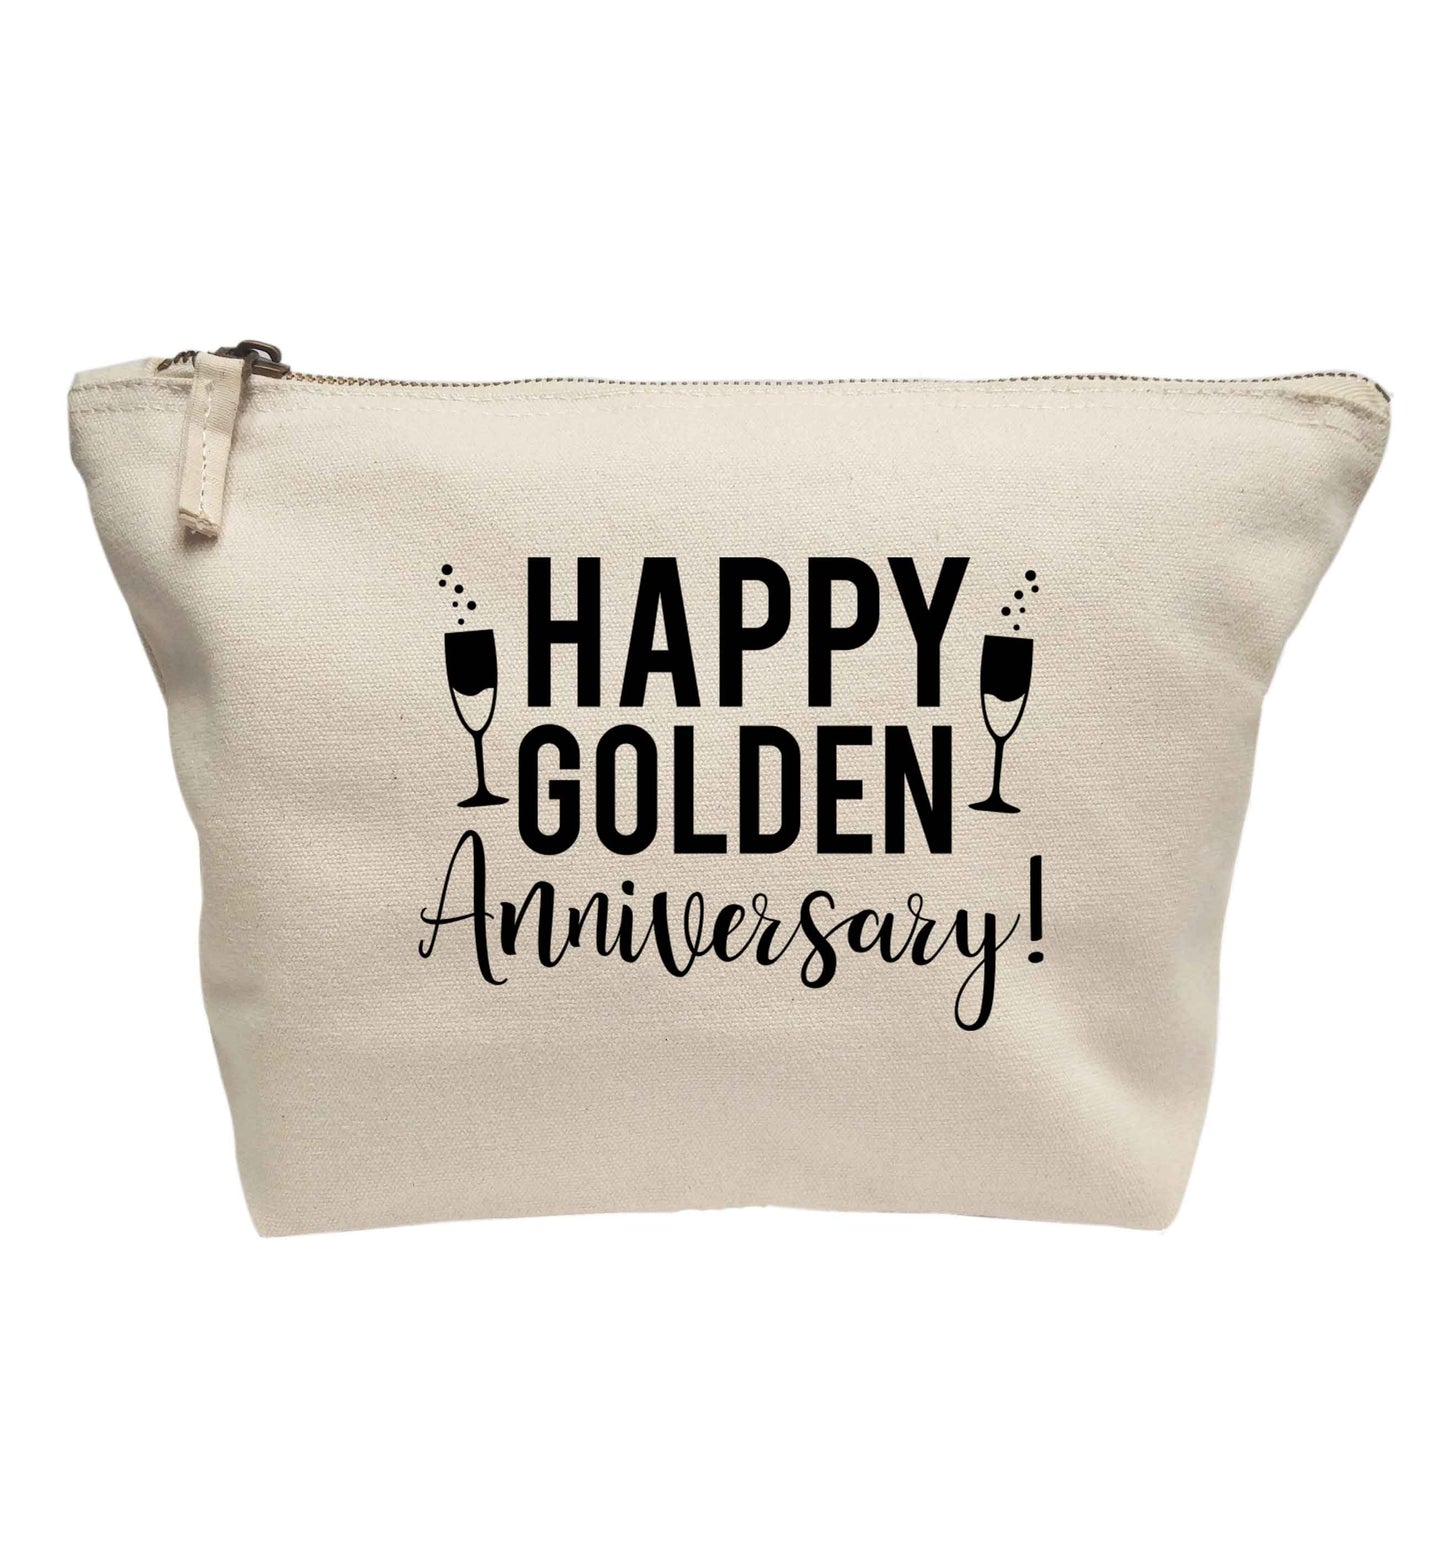 Happy golden anniversary! | Makeup / wash bag